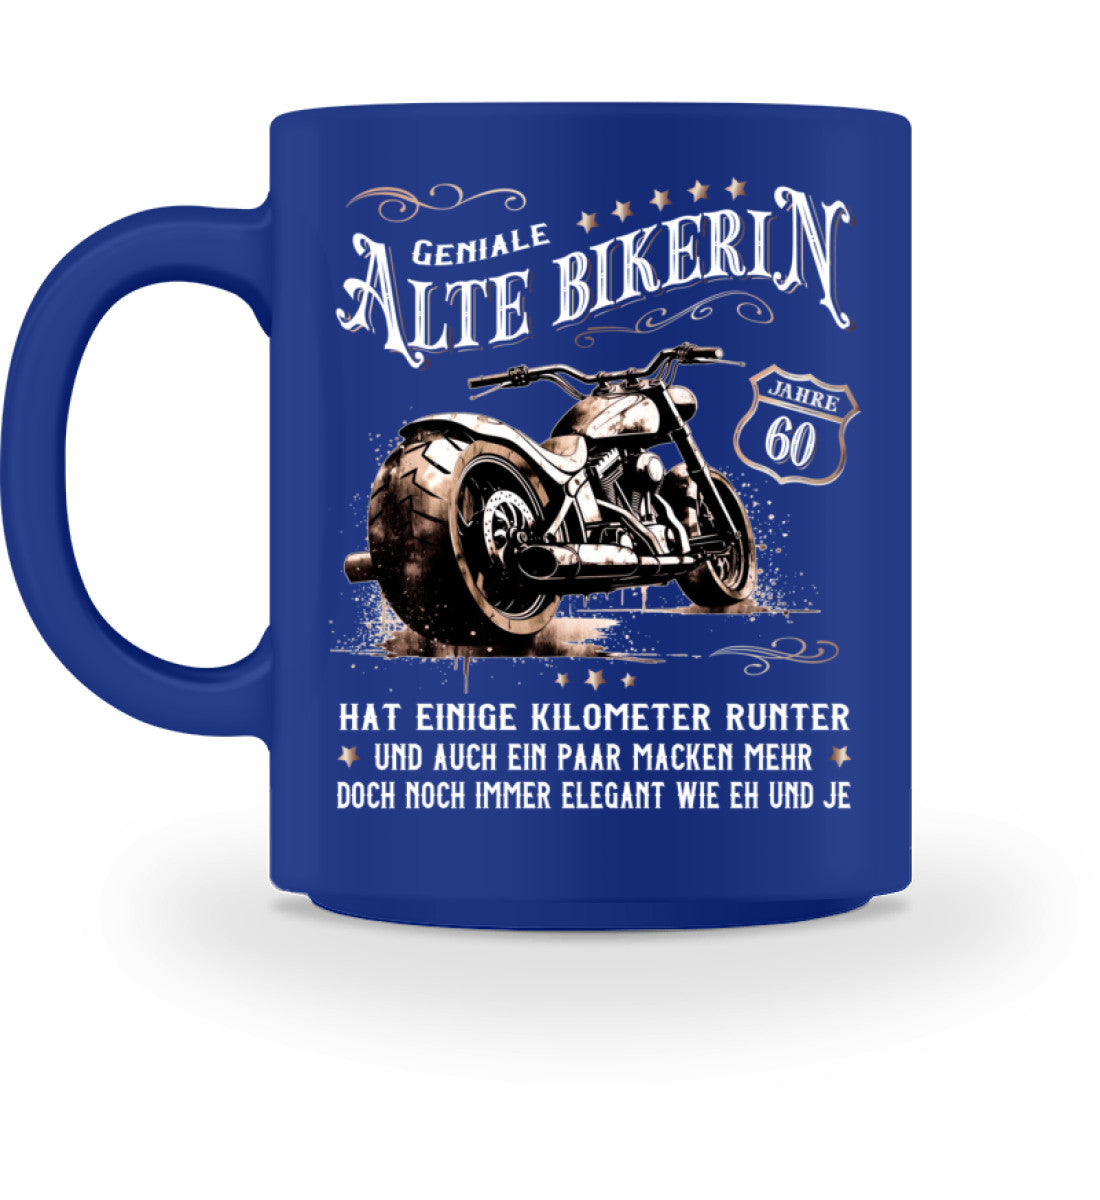 Eine Bikerin Geburtstags-Tasse für Motorradfahrerinnen, von Wingbikers, mit dem beidseitigen Aufdruck, Alte Bikerin - 60 Jahre - Einige Kilometer Runter - Doch elegant wie eh und je, in blau.